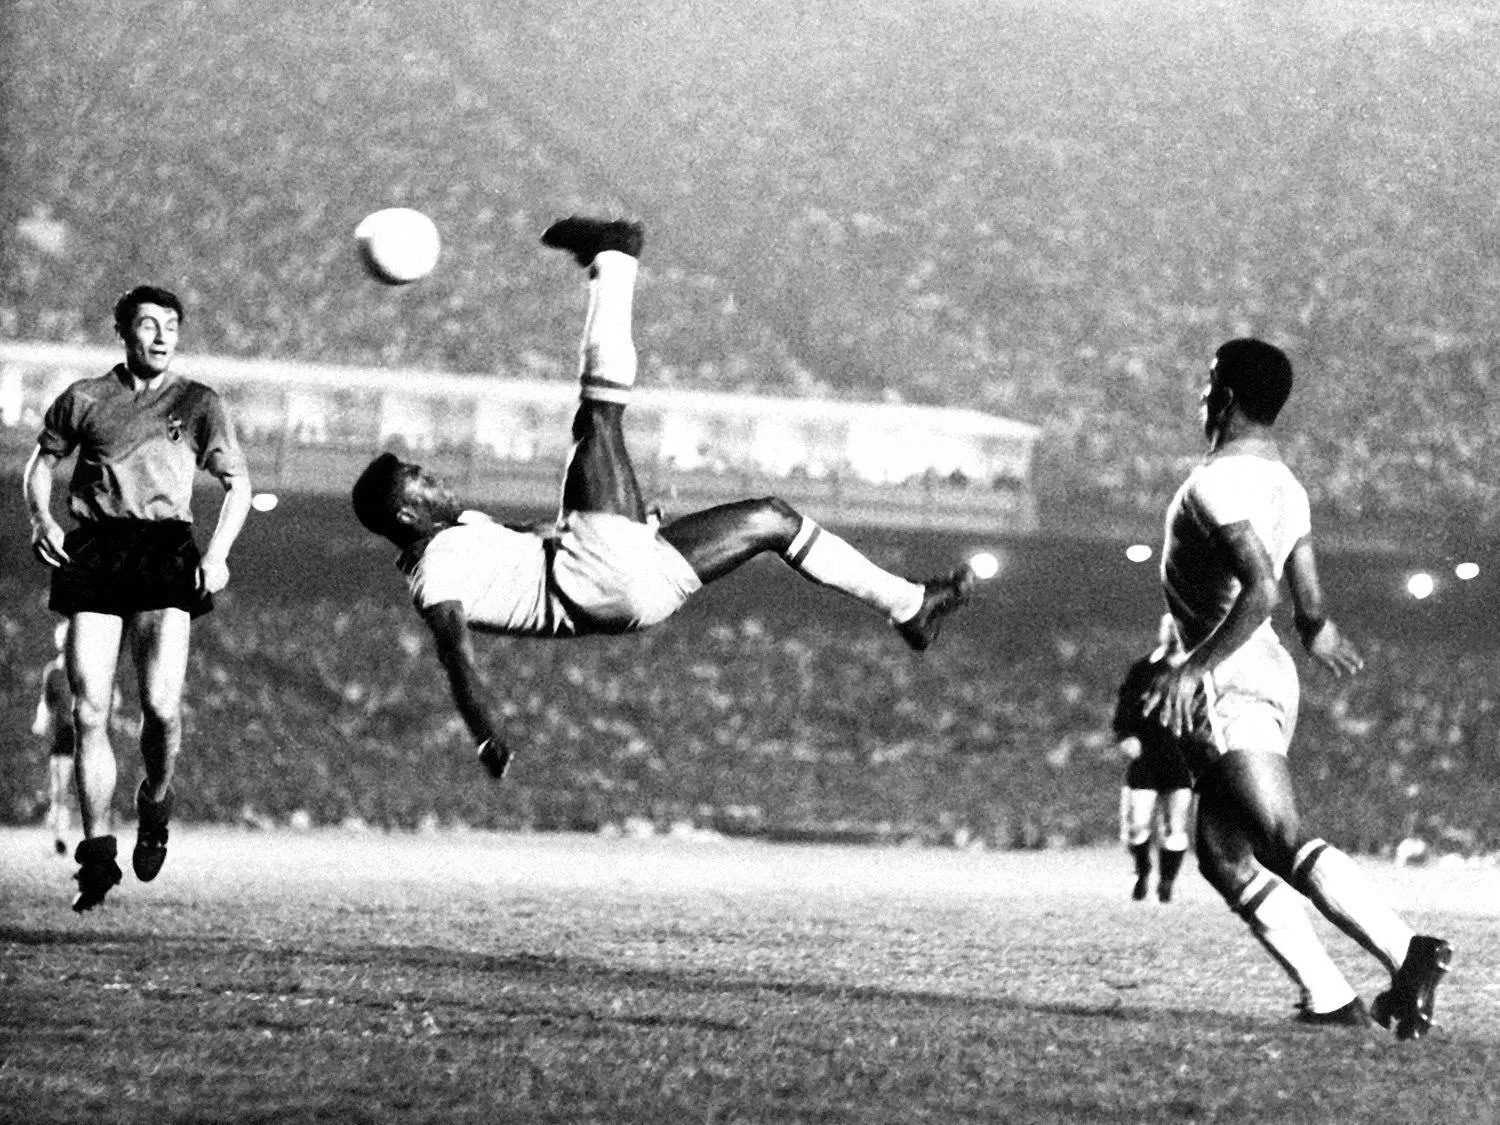 Pele với cú vô lê trong một trận đấu năm 1968 tại một địa điểm không xác định. [Ảnh: AP]